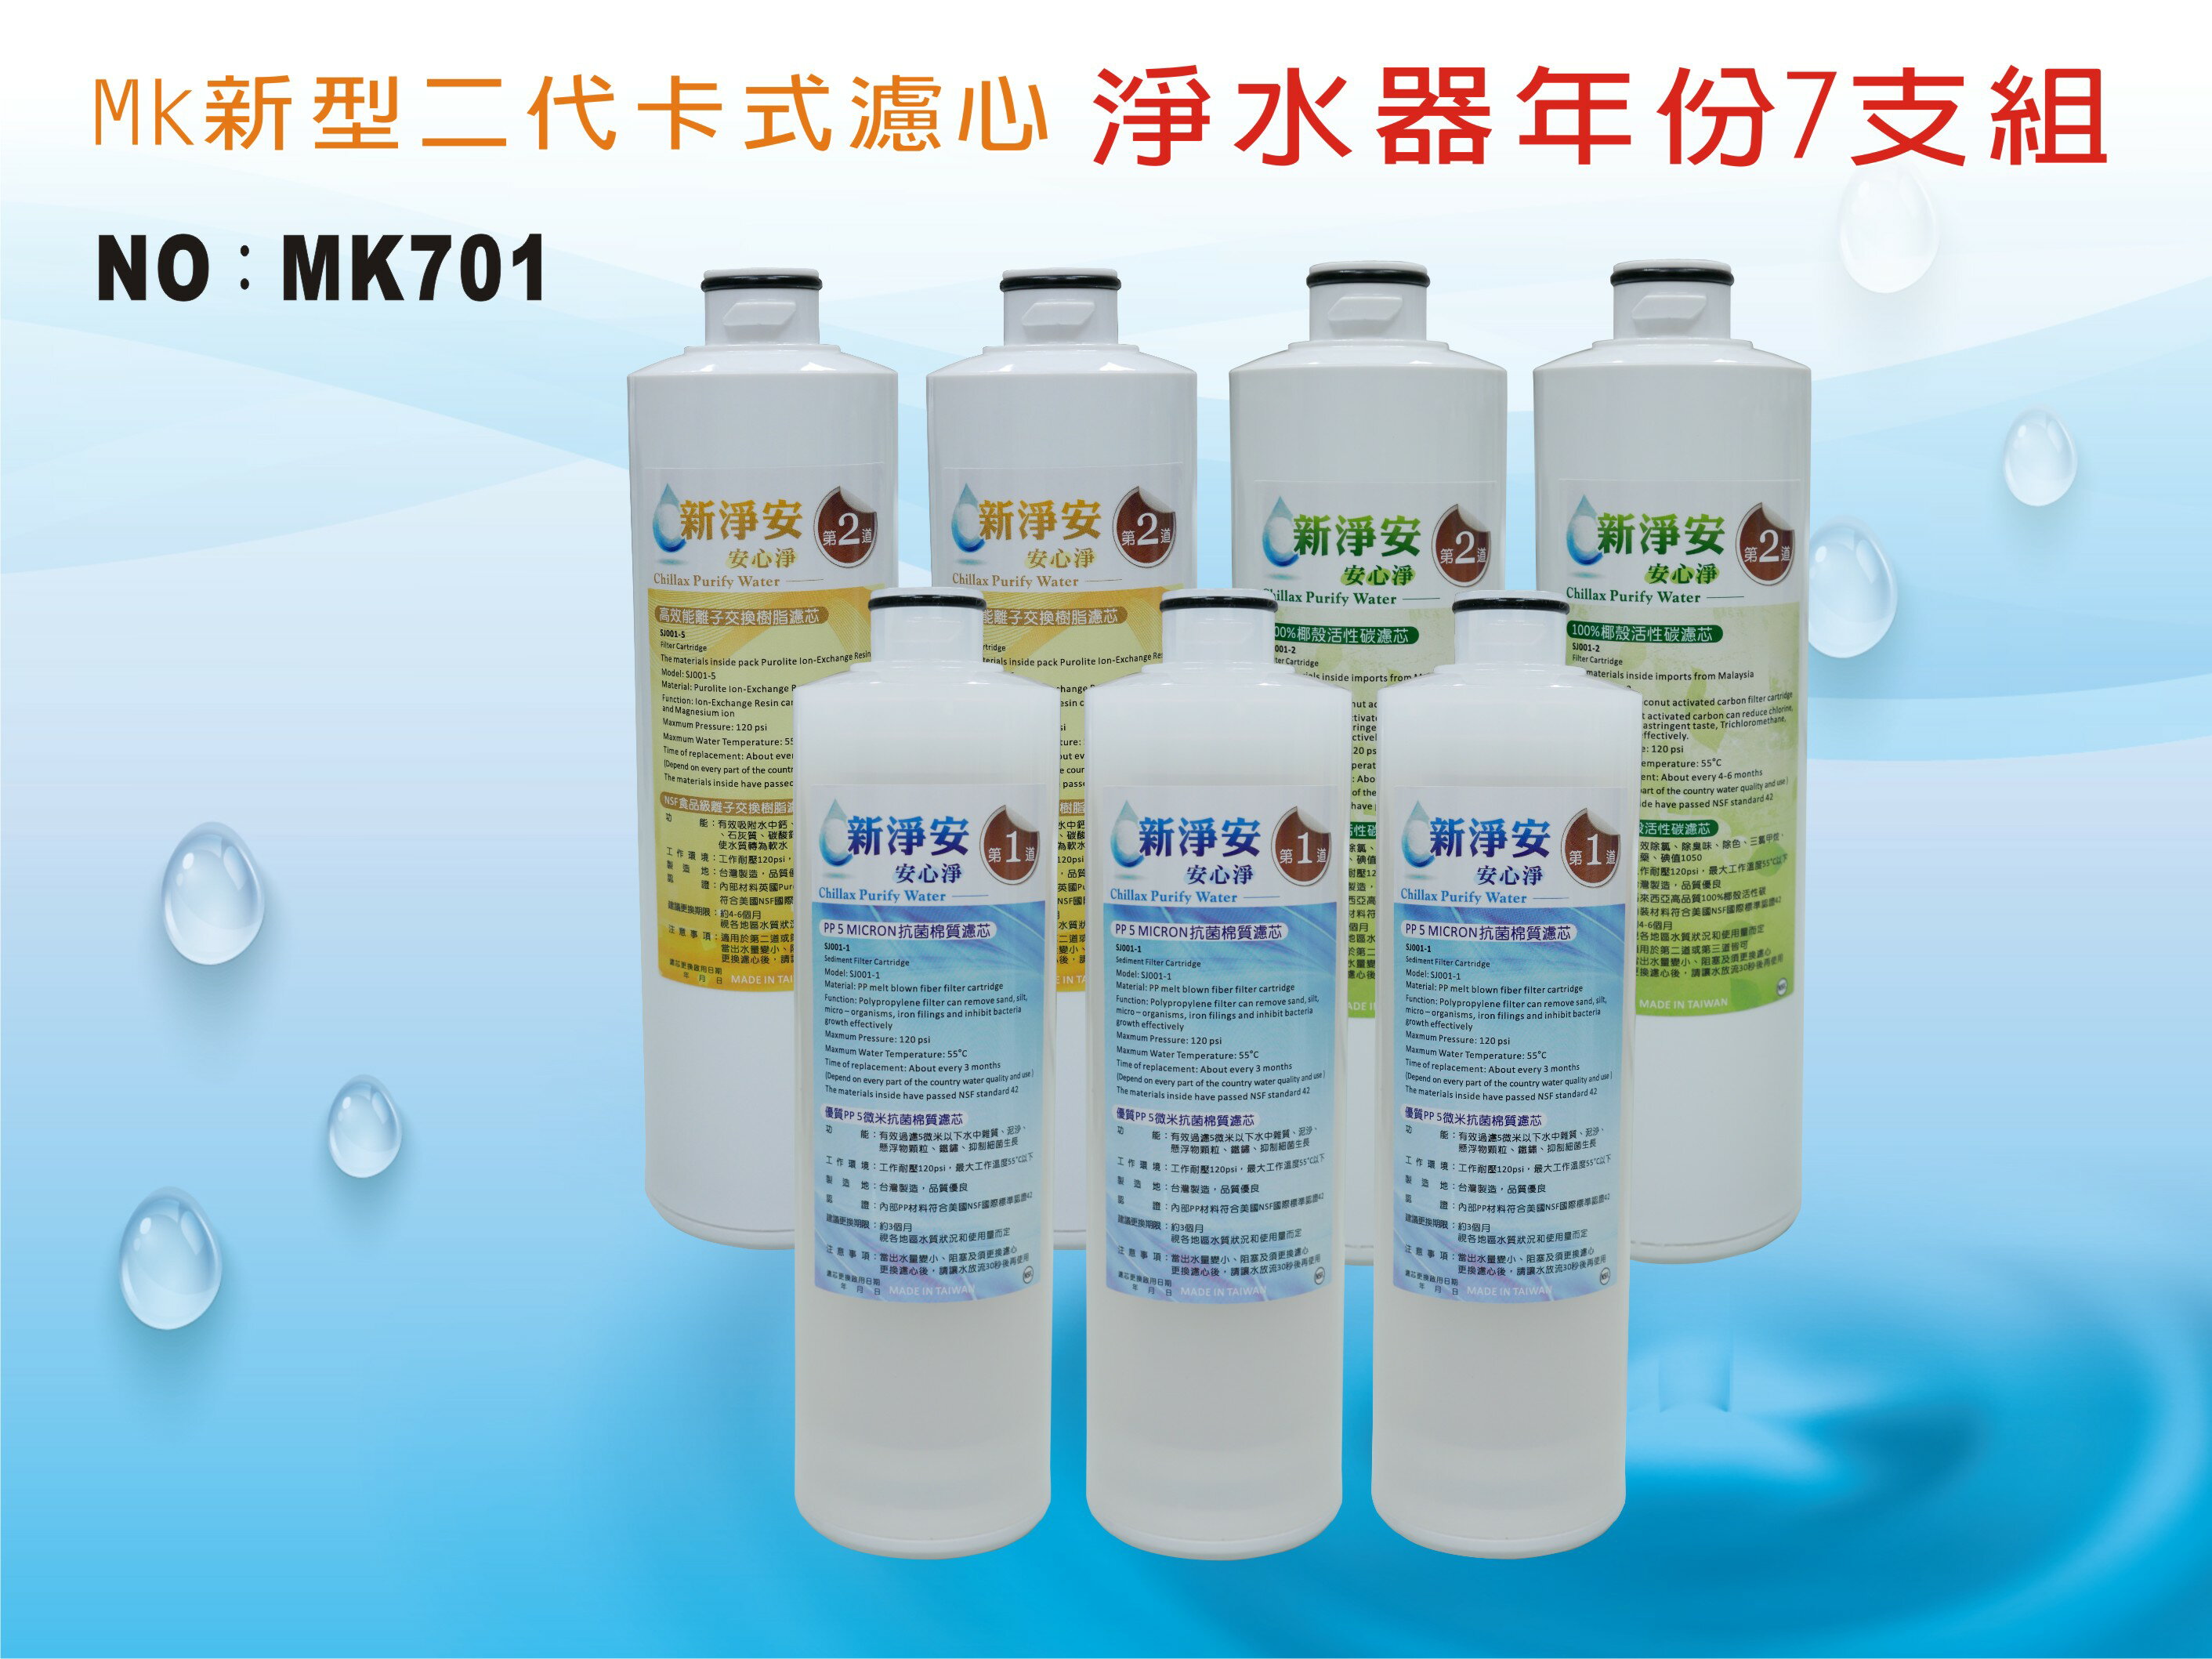 【龍門淨水】 MK二代卡式淨水器年份濾心7支組 PP 樹脂 活性碳 飲水機 淨水器(MK701)